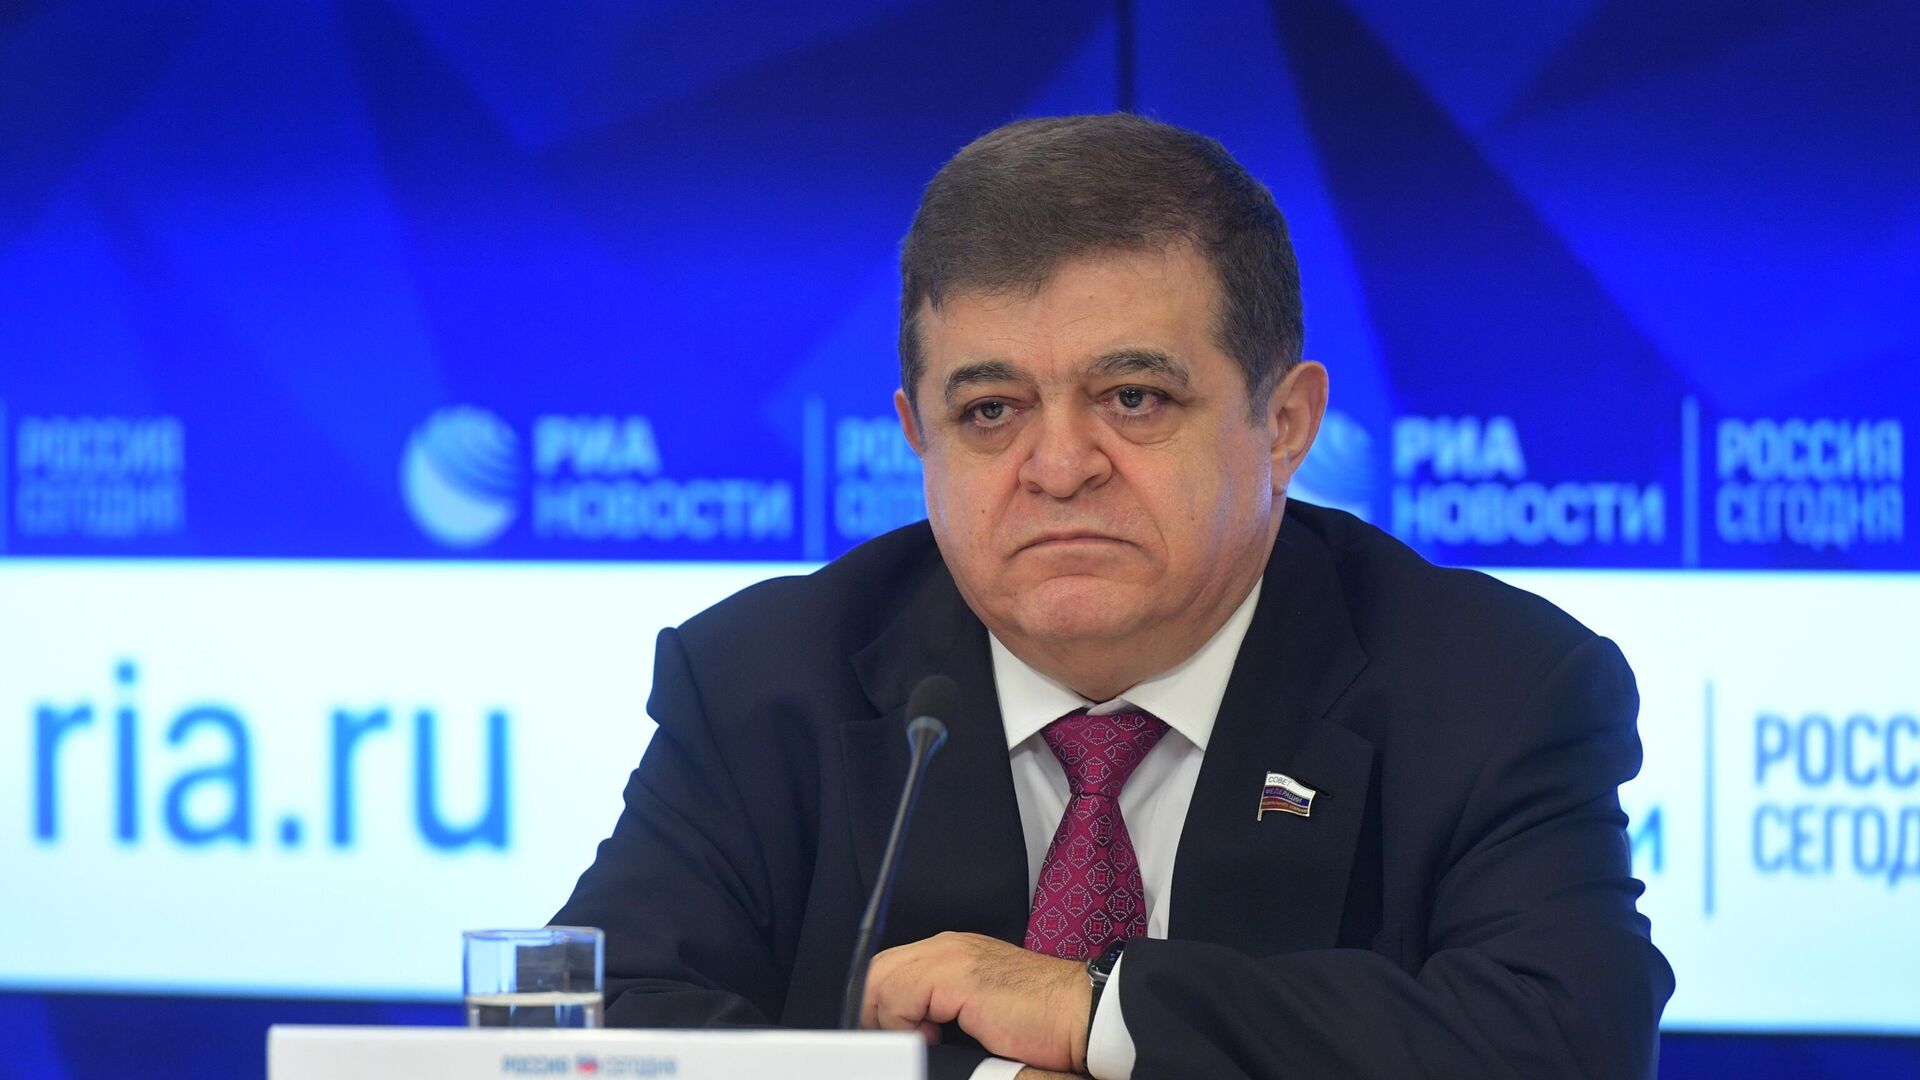 Сенатор Джабаров: смена руководства в Южной Осетии не скажется на отношениях с Россией